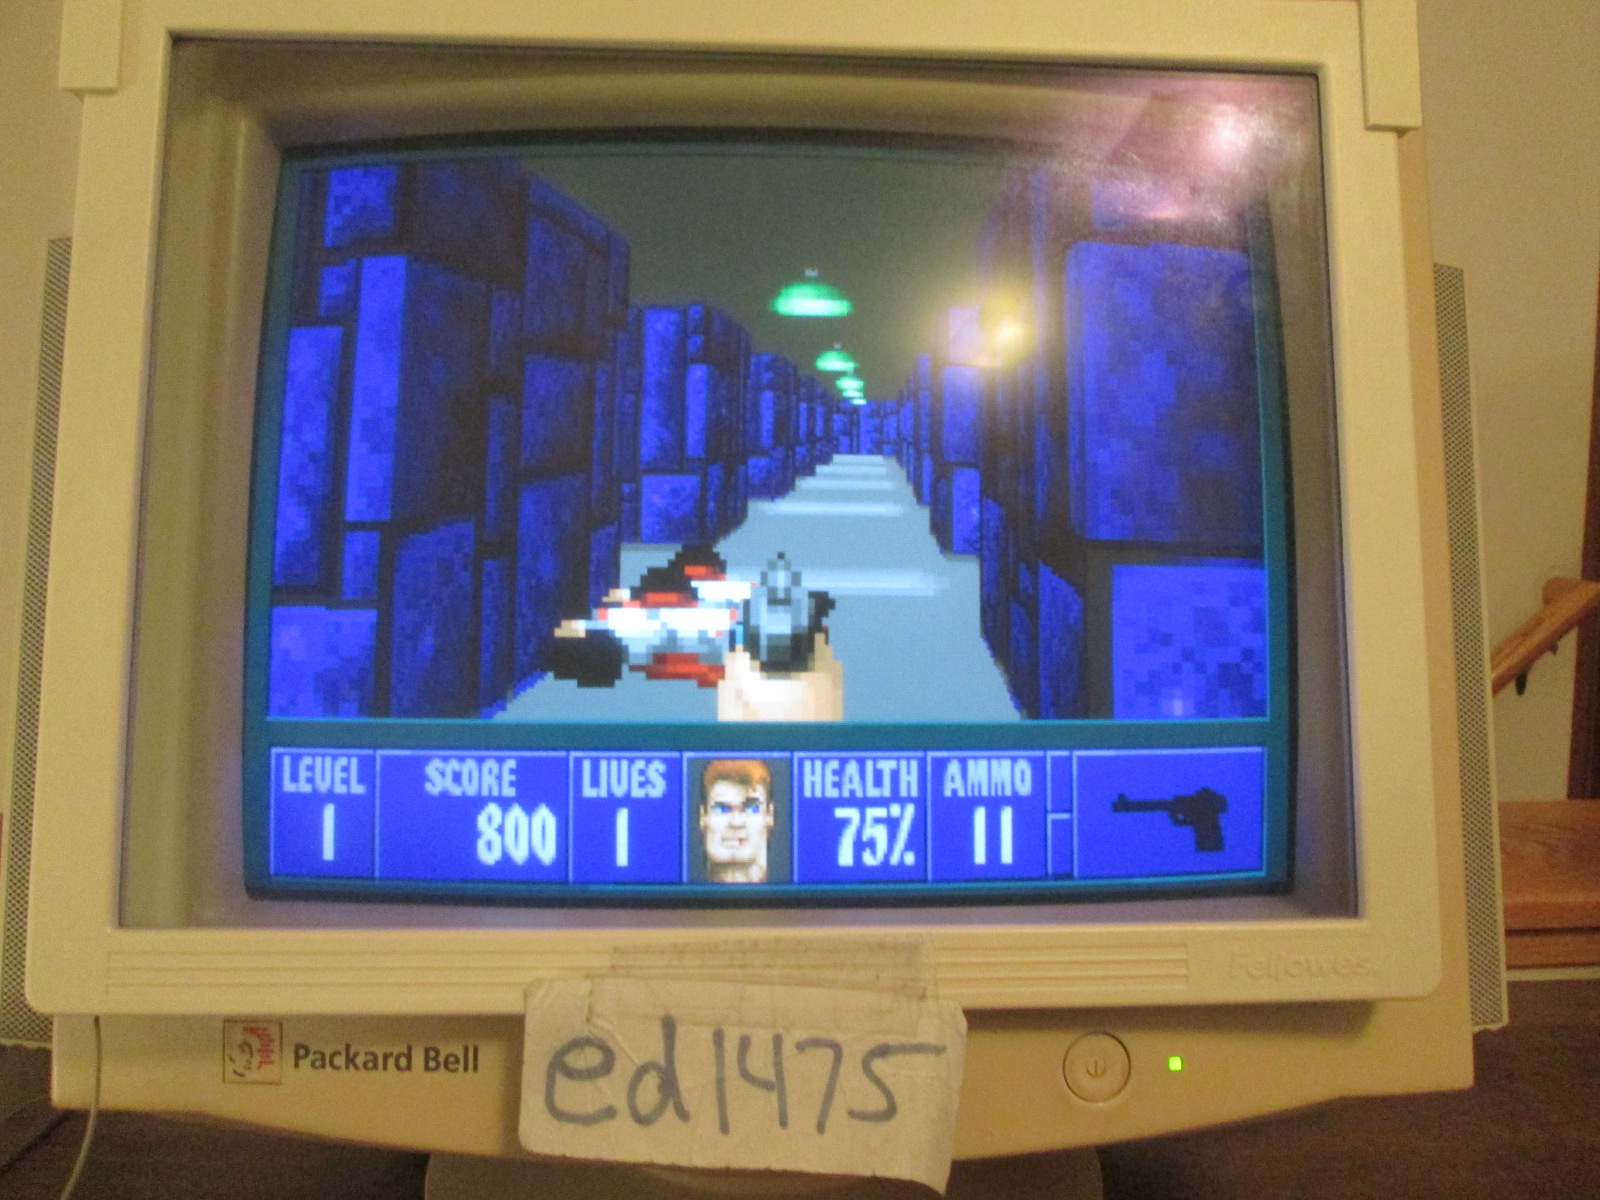 ed1475: Wolfenstein 3D: Episode 6: Confrontation [Bring 